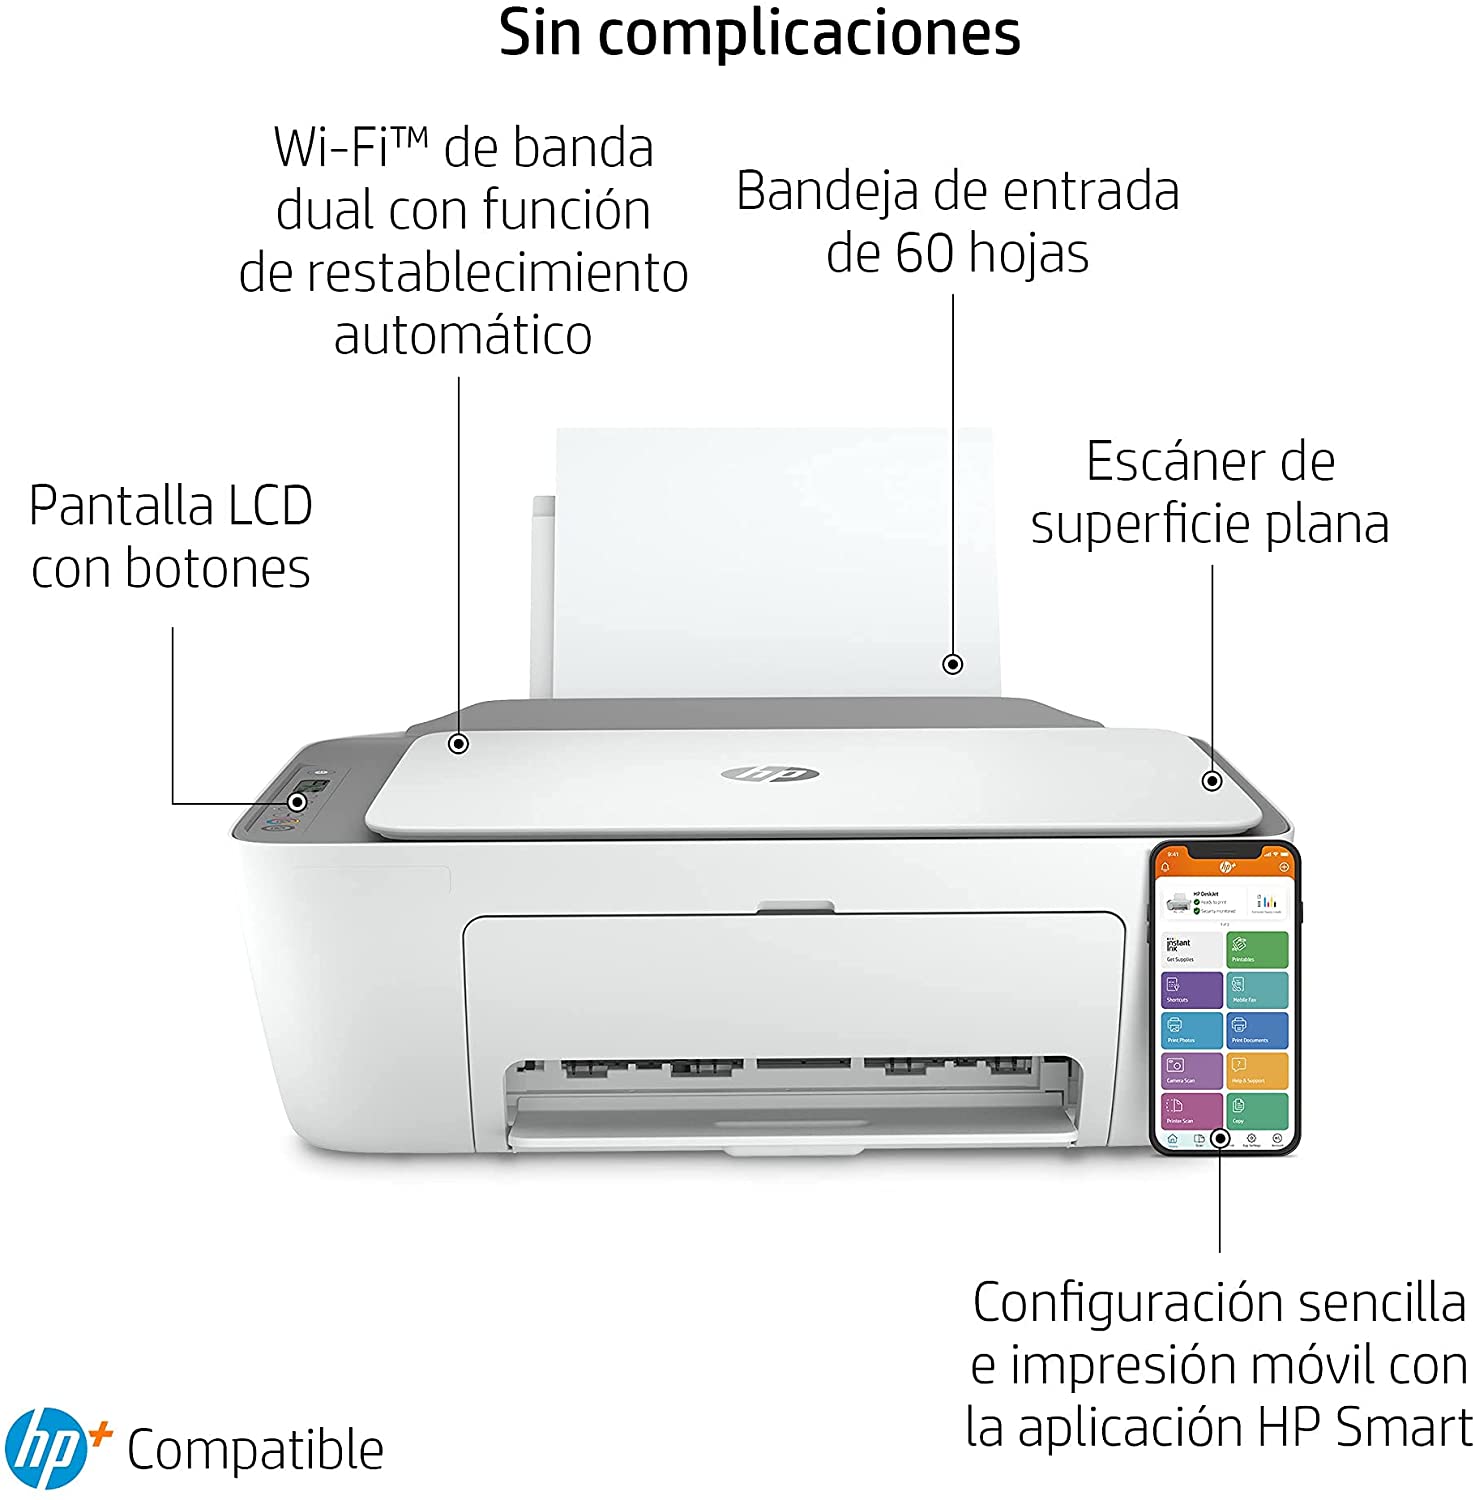 HP Deskjet 2720e Wifi/White Fax Multifunktionsdrucker